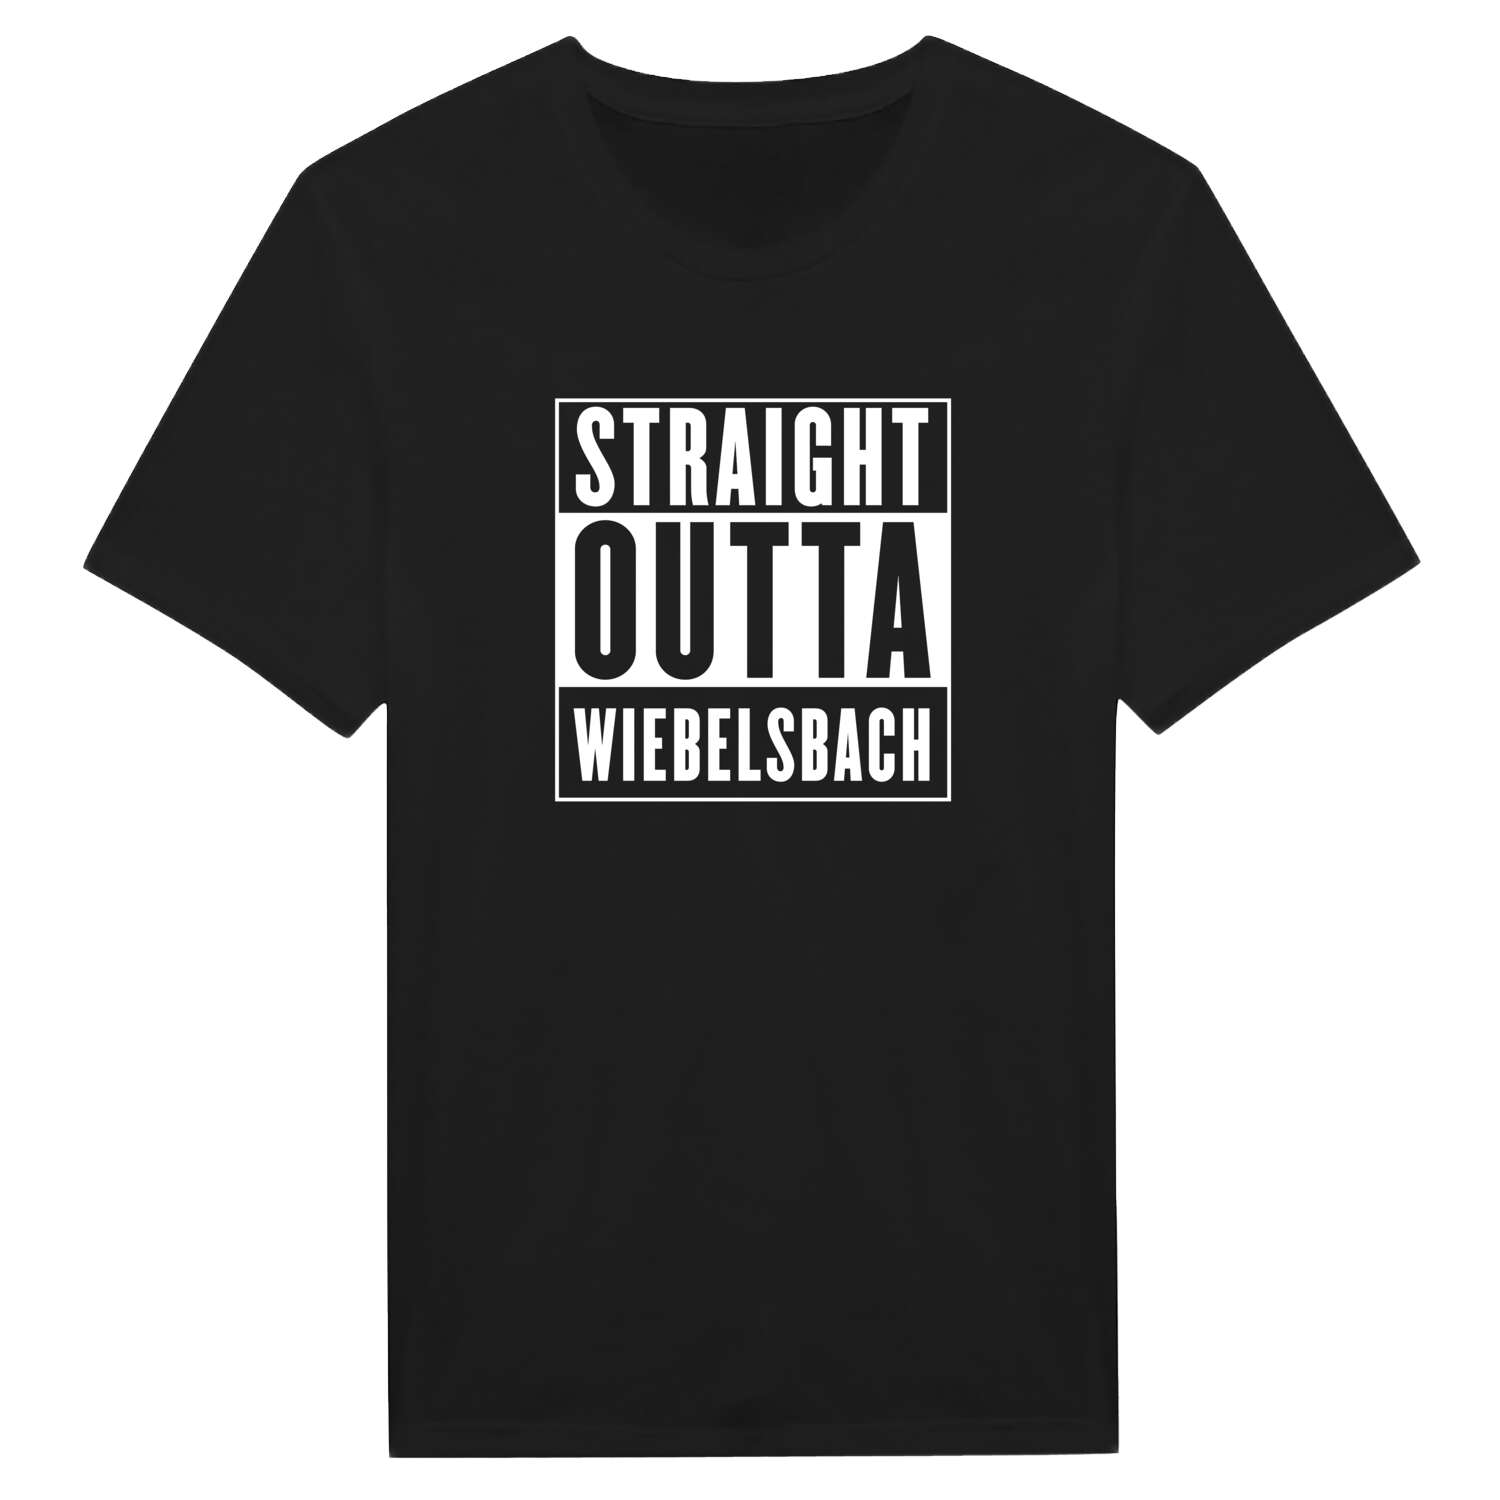 Wiebelsbach T-Shirt »Straight Outta«